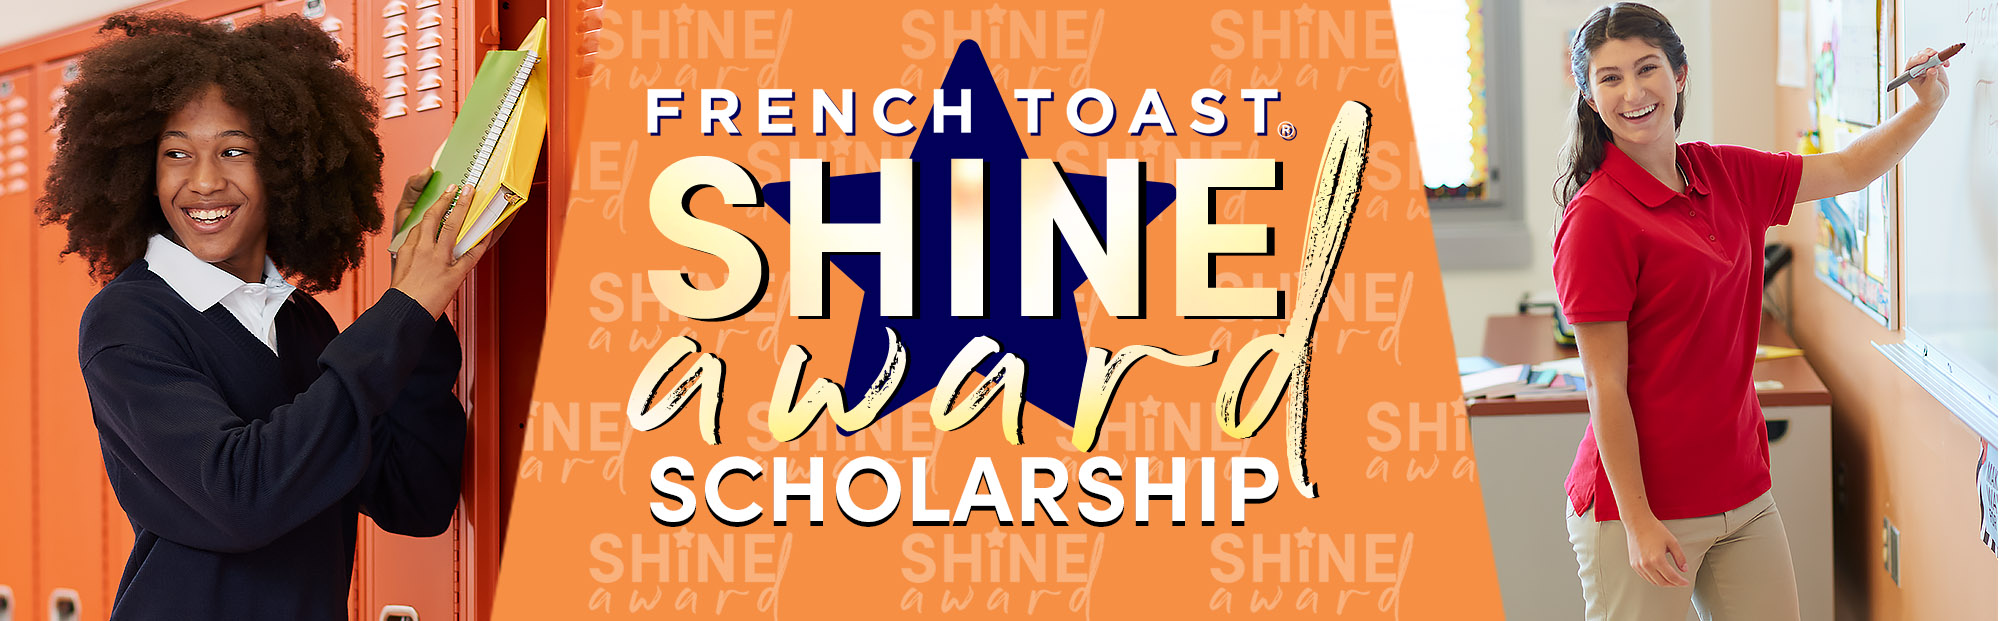 French Toast Shine Award Scholarship